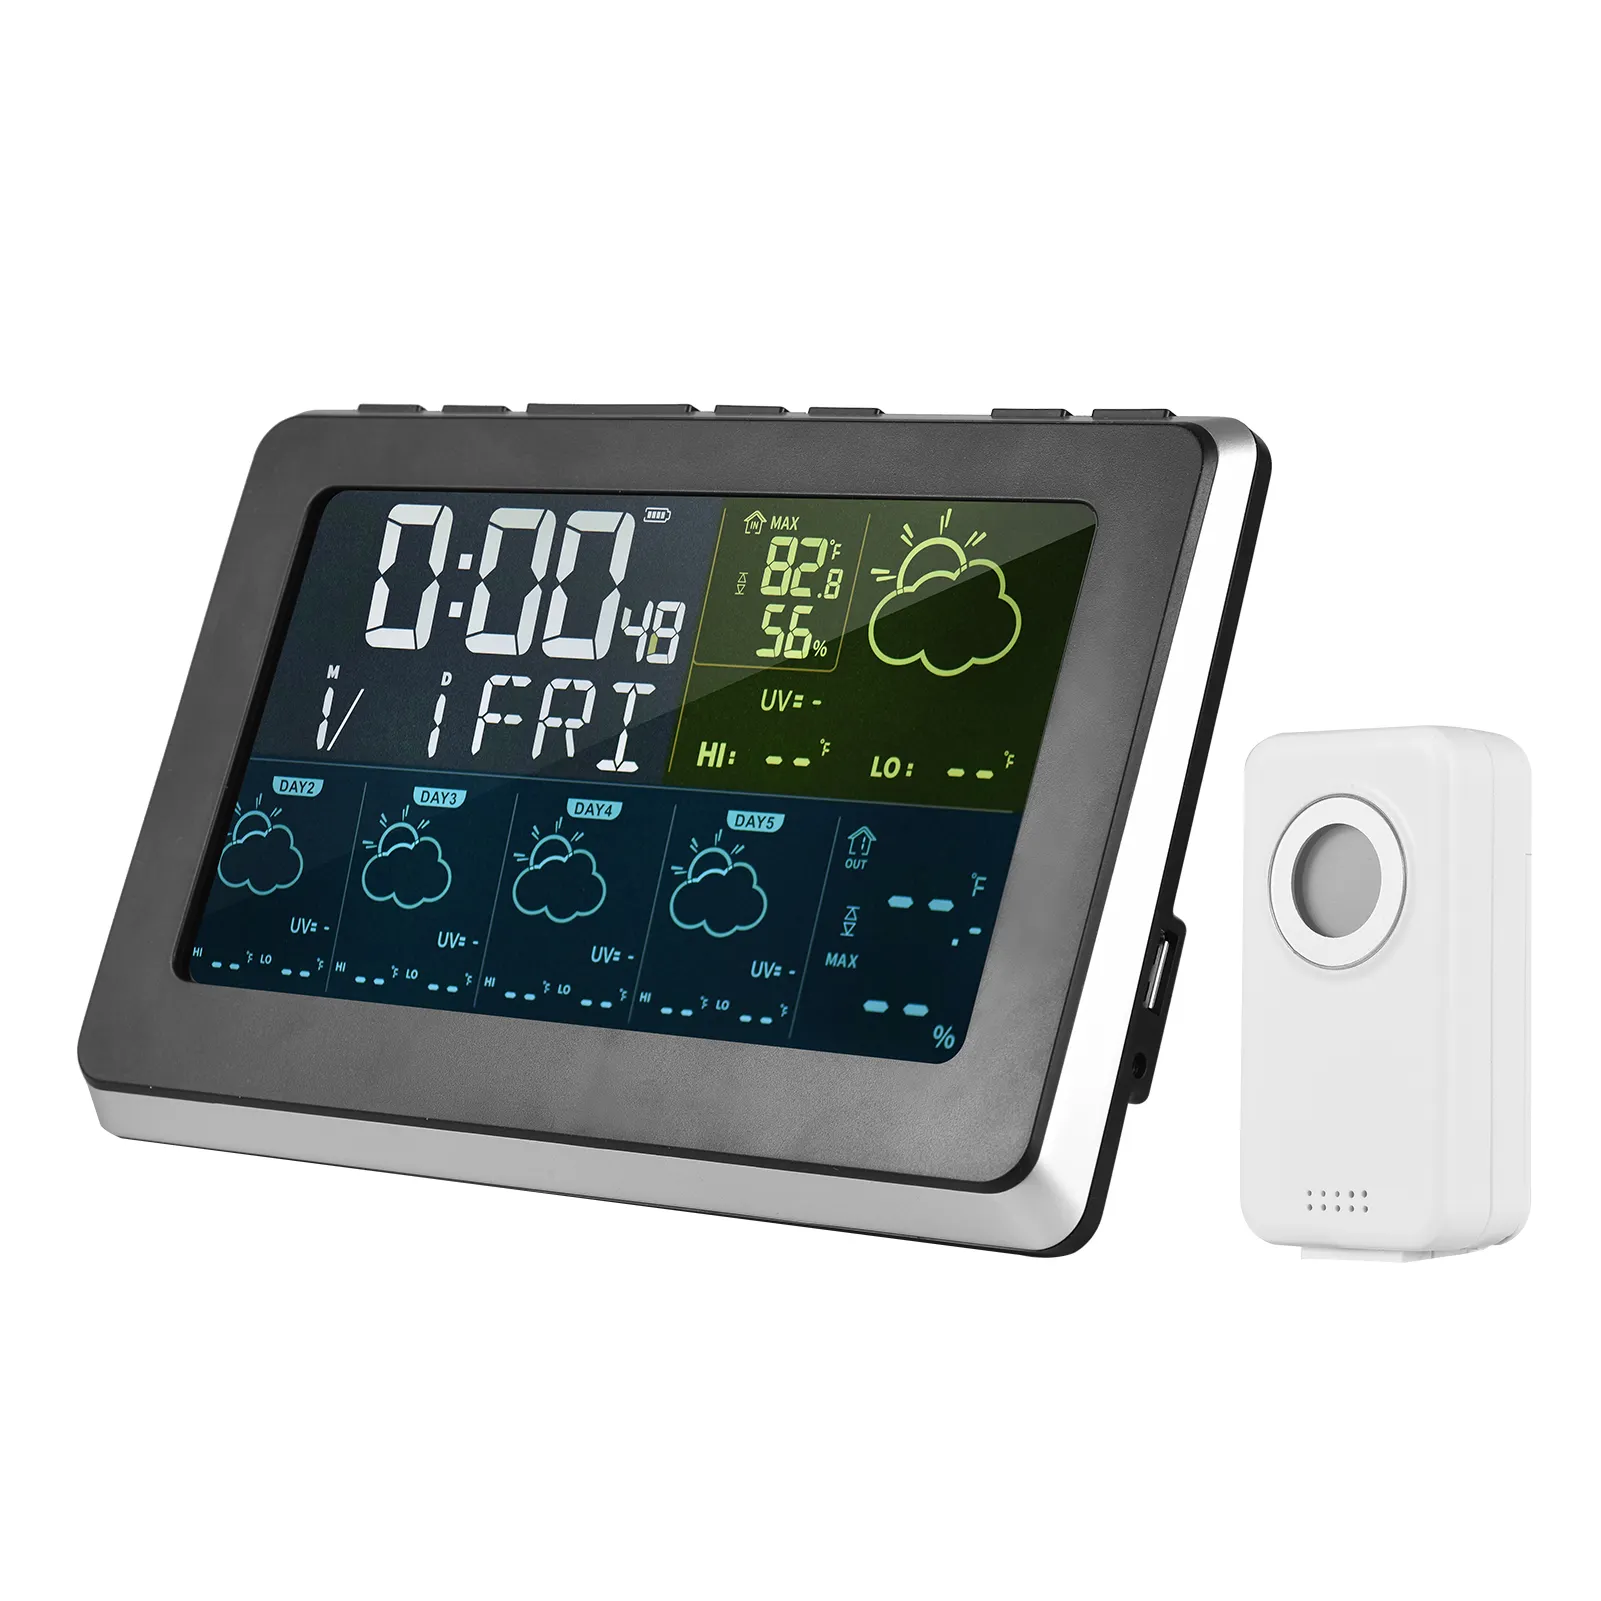 Tuya WiFi Wetters tation Drahtloser Temperatur-Feuchtigkeit sensor Thermometer Feuchtigkeit messer Fernbedienung Digitaler Wecker